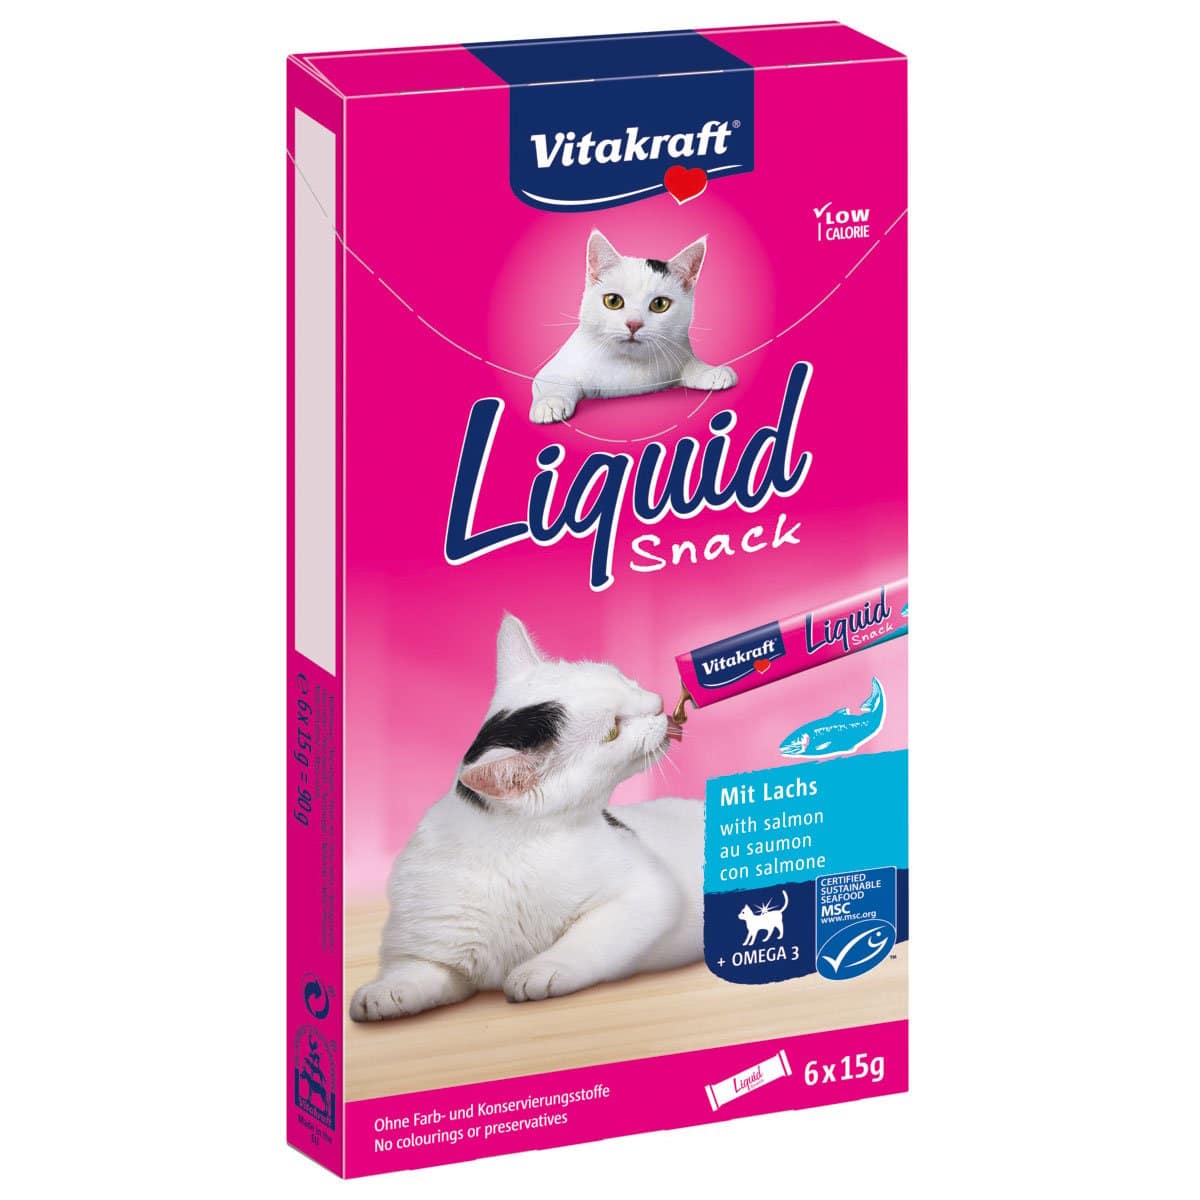 Vitakraft Cat liquid Snack Lachs 3x6 Stk